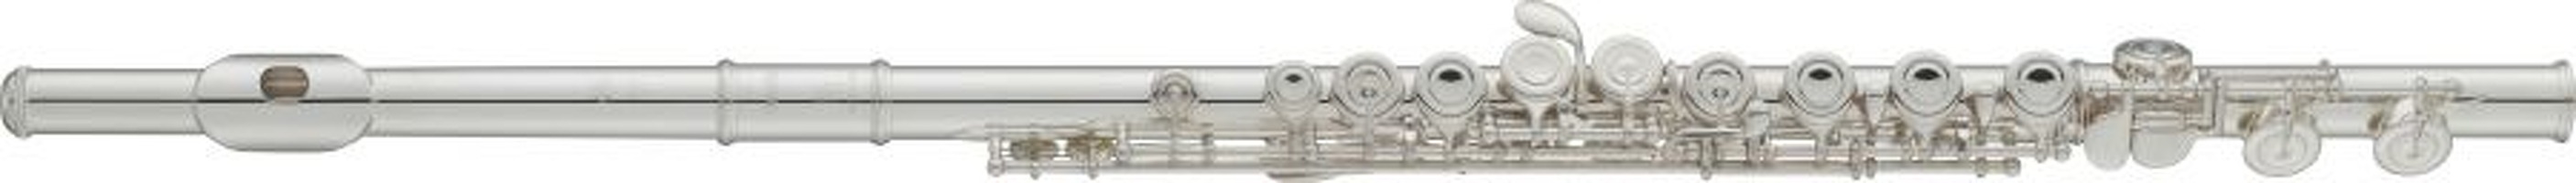 YFL-412 Flute: Flute